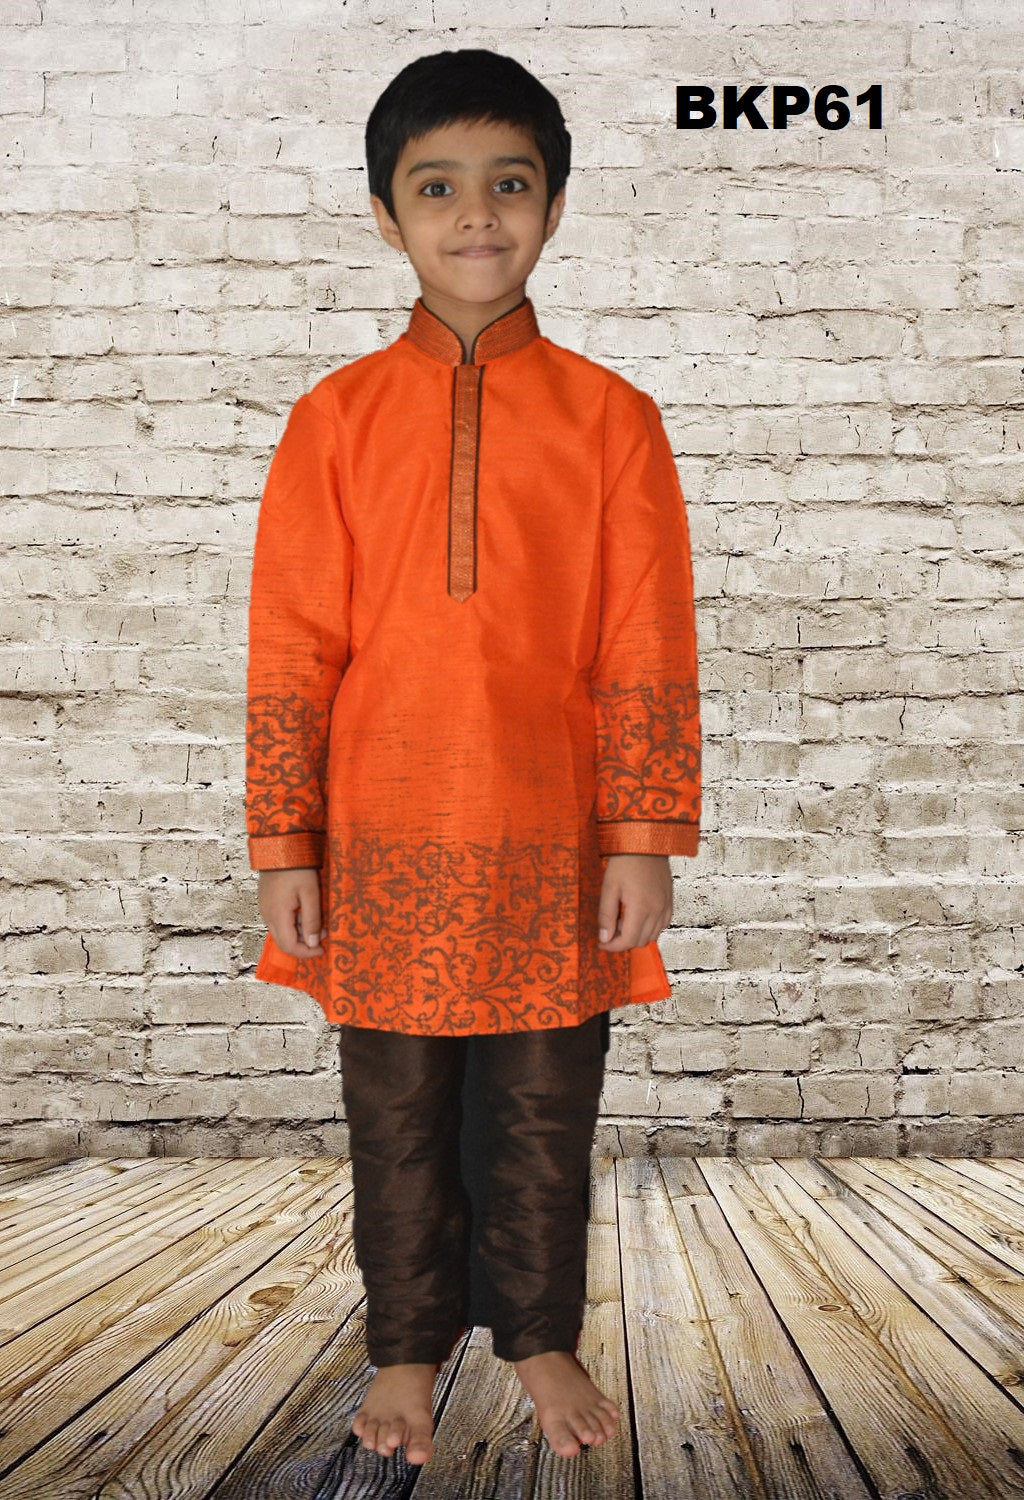 BKP61 - Boys Orange Printed silk Kurta Pajama set